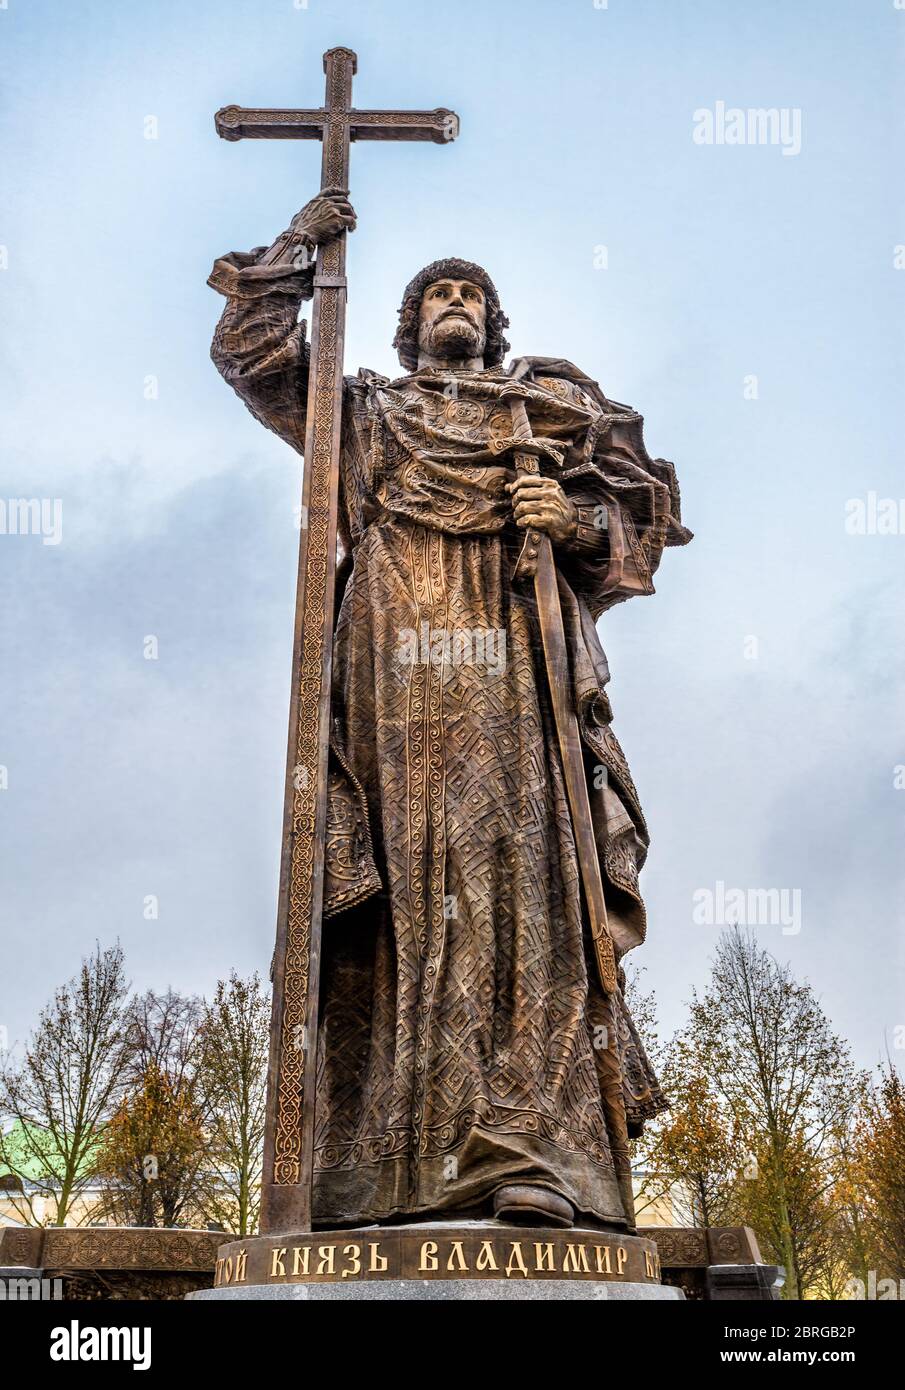 Monument au Saint-Prince Vladimir le Grand sur la place Borovitskaya près du Kremlin. Vladimir est crédité de l'introduction de Christianit orthodoxe Banque D'Images